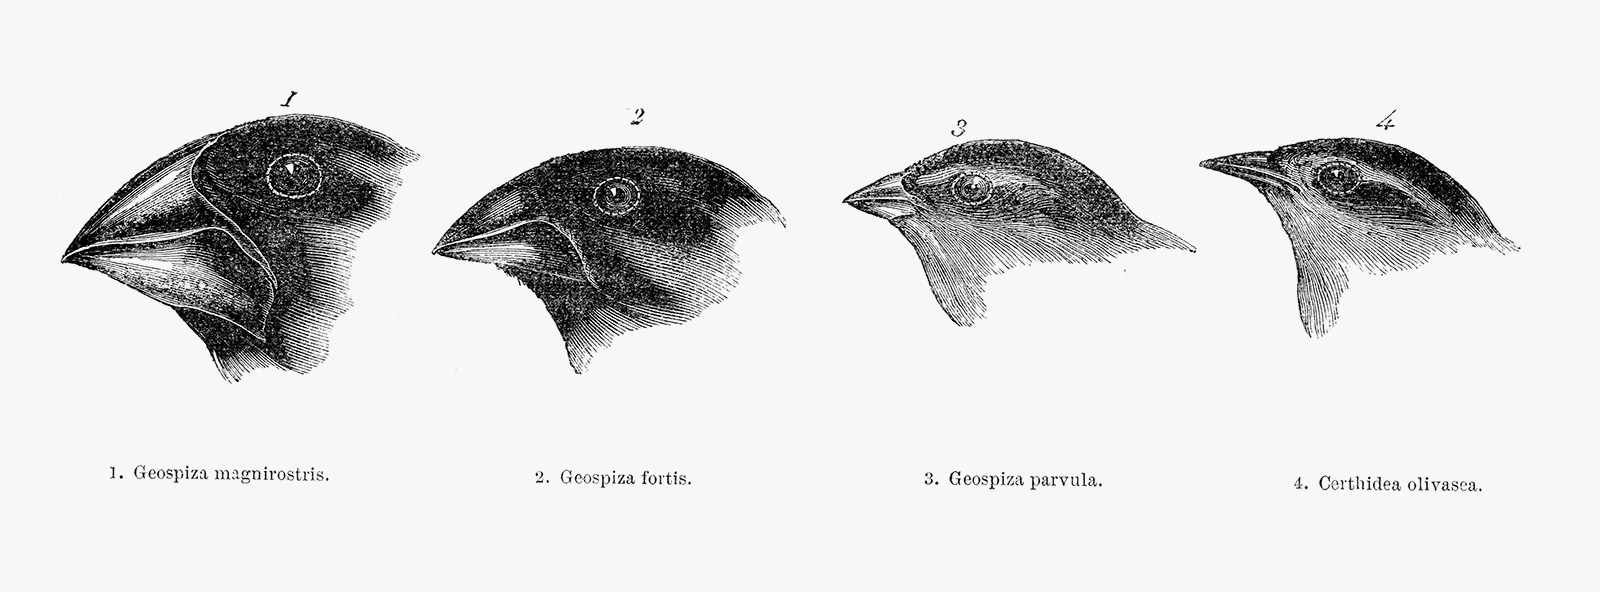 Как изменится численность зябликов и ястребов. Дарвин вьюрки Галапагосские острова. Галапагосские вьюрки клювы. Вьюрки Дарвина. Клювы Вьюрков Дарвина.